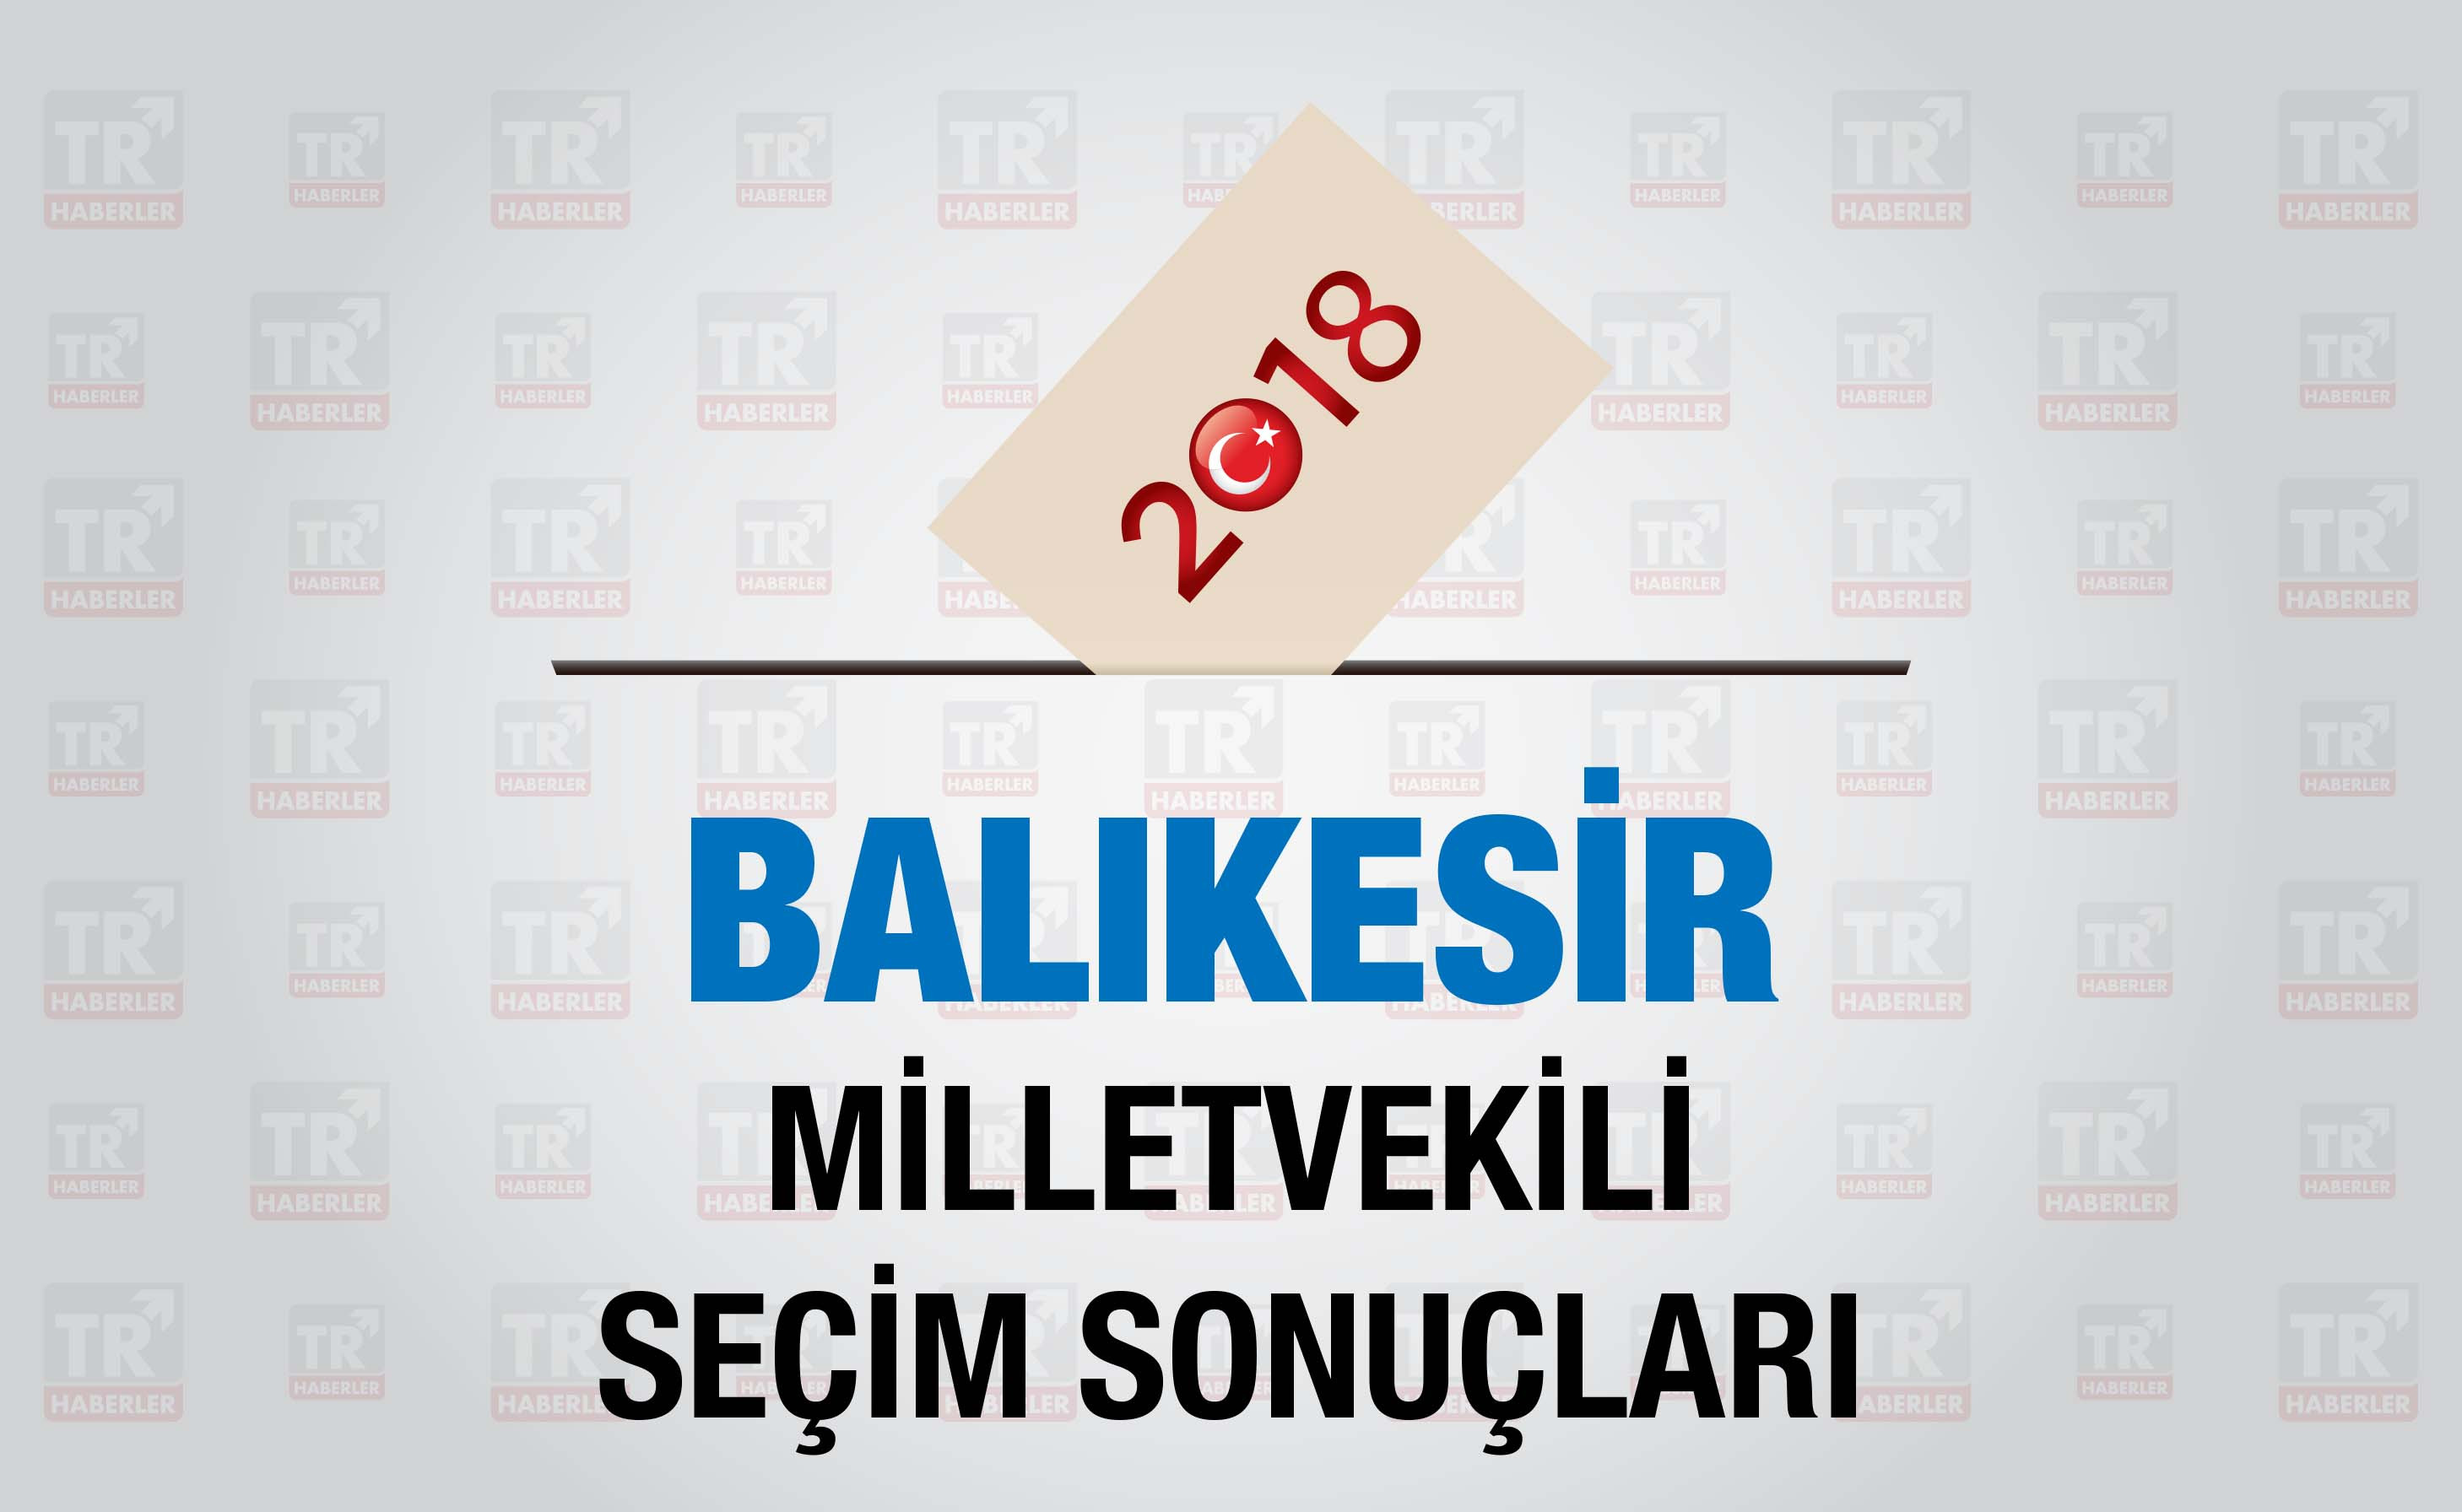 Balıkesir seçim sonuçları : Balıkesir Milletvekili seçim sonuçları - Seçim 2018